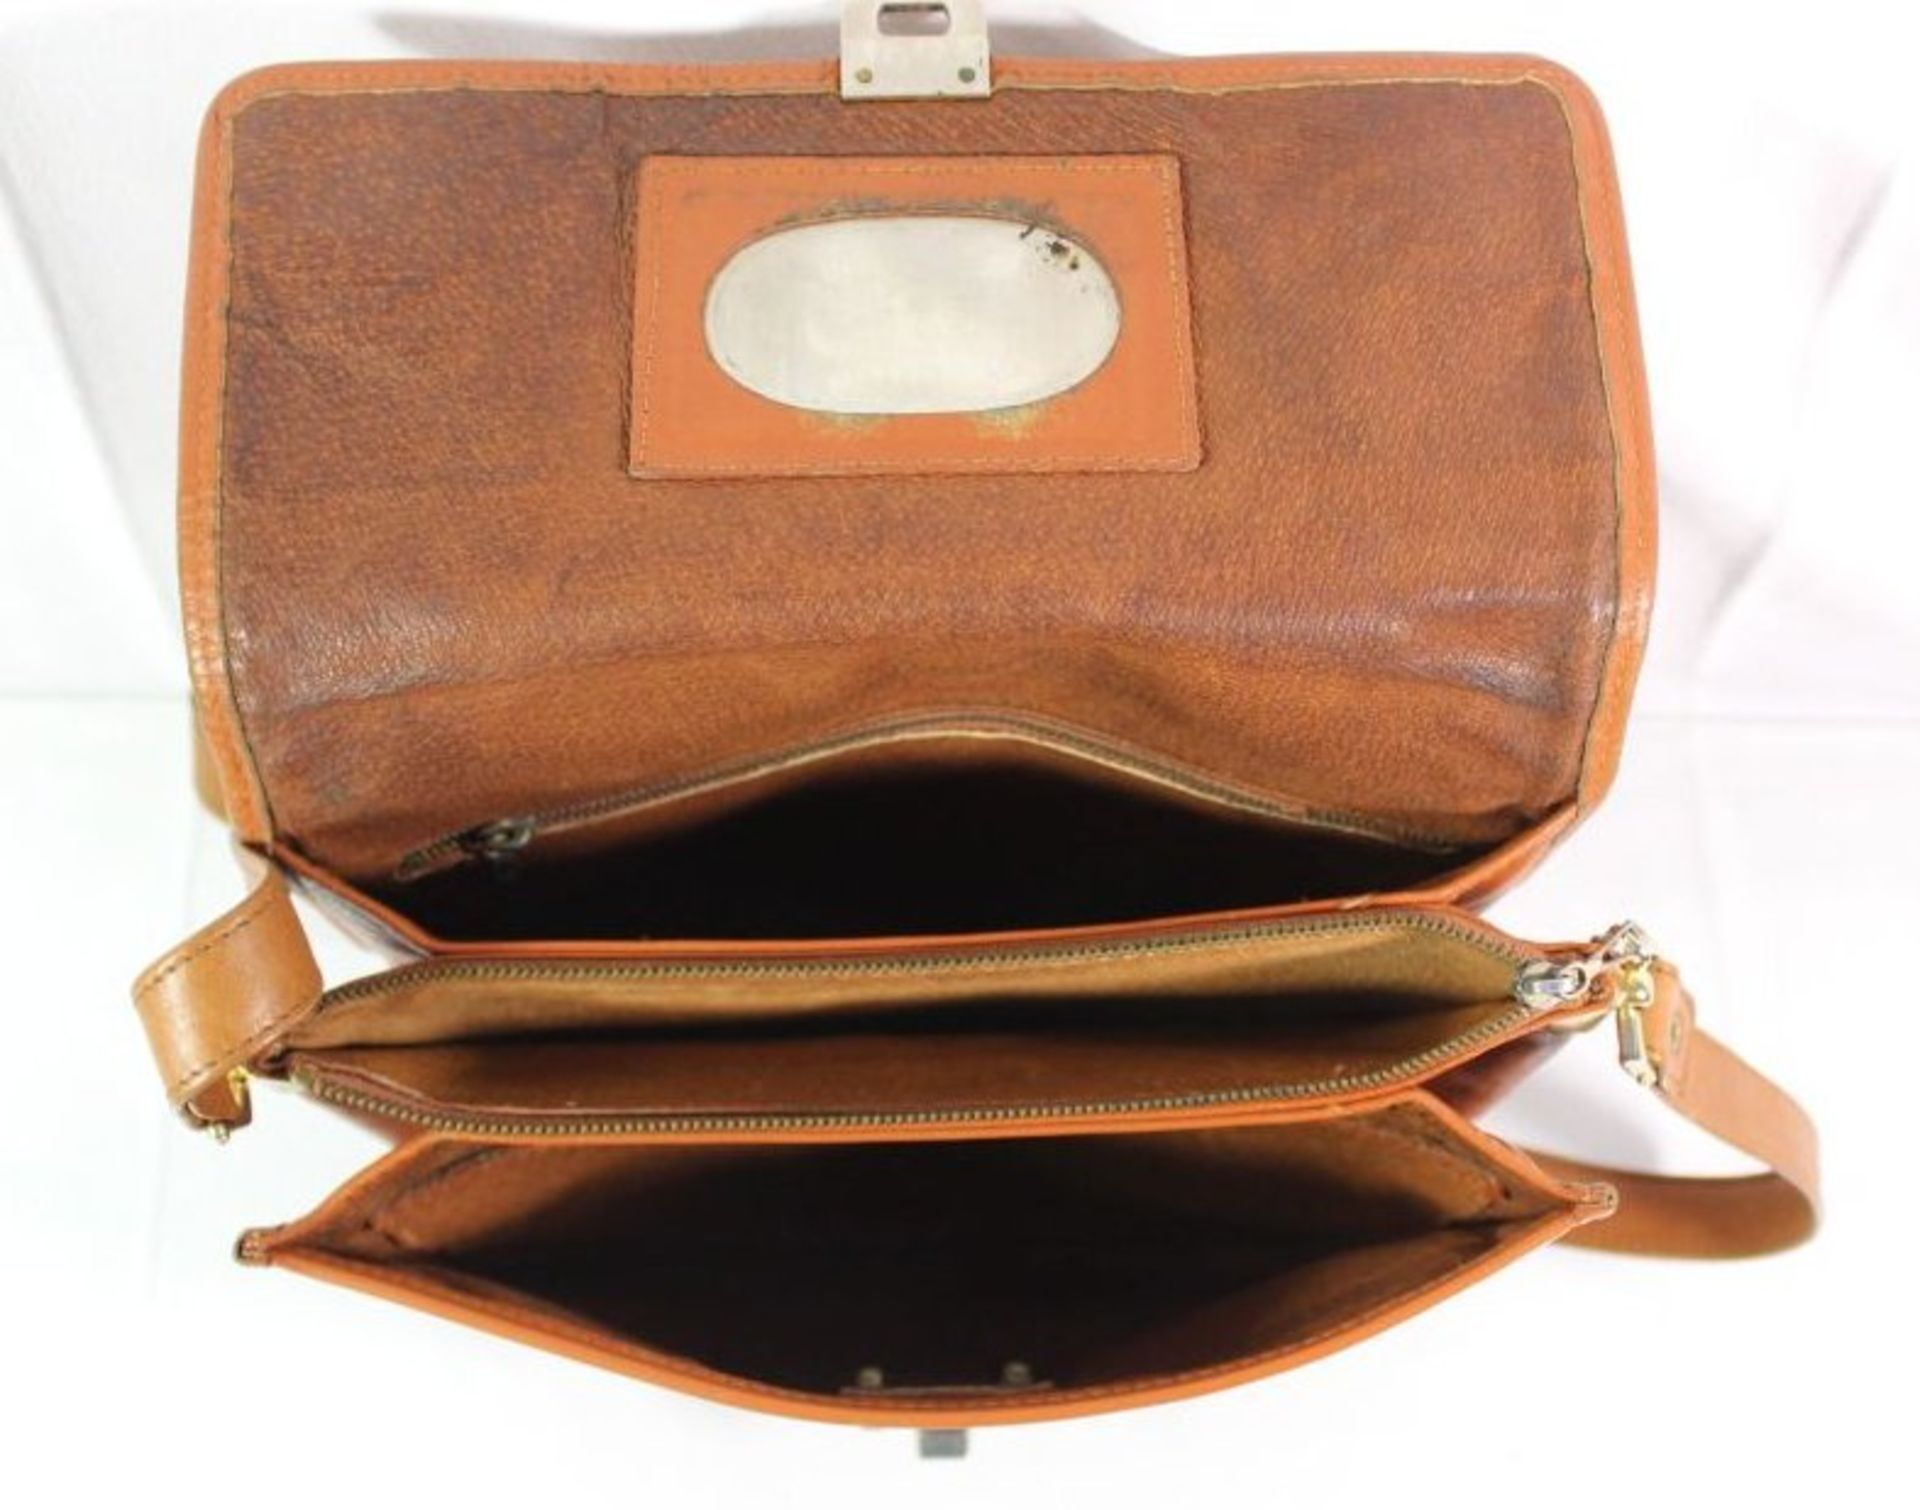 Damen-Handtasche, MCM, getragene Erhaltung, 19 x 24cm. - Bild 4 aus 5